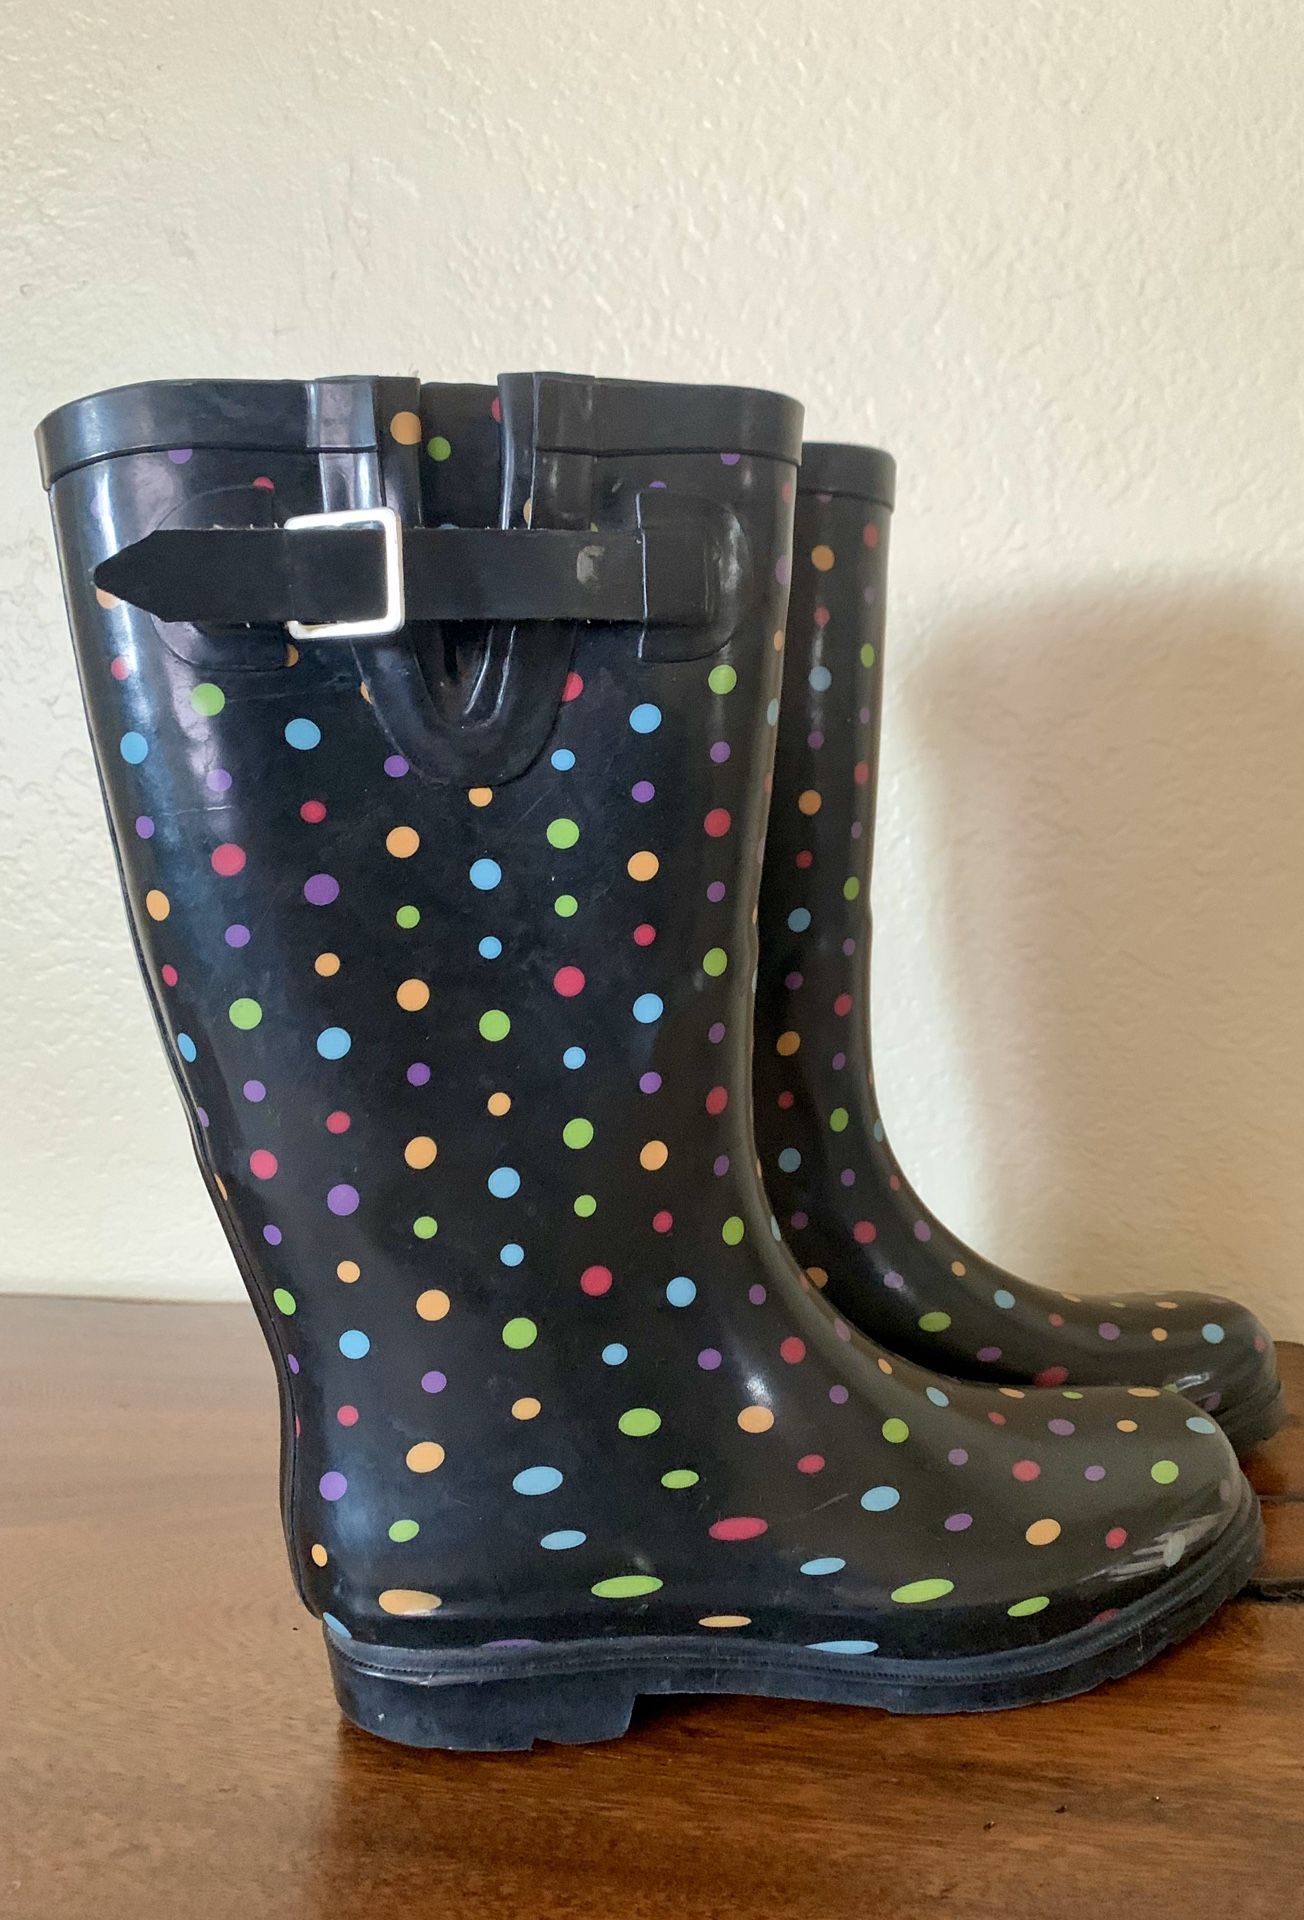 Rain boots girl/woman size 7